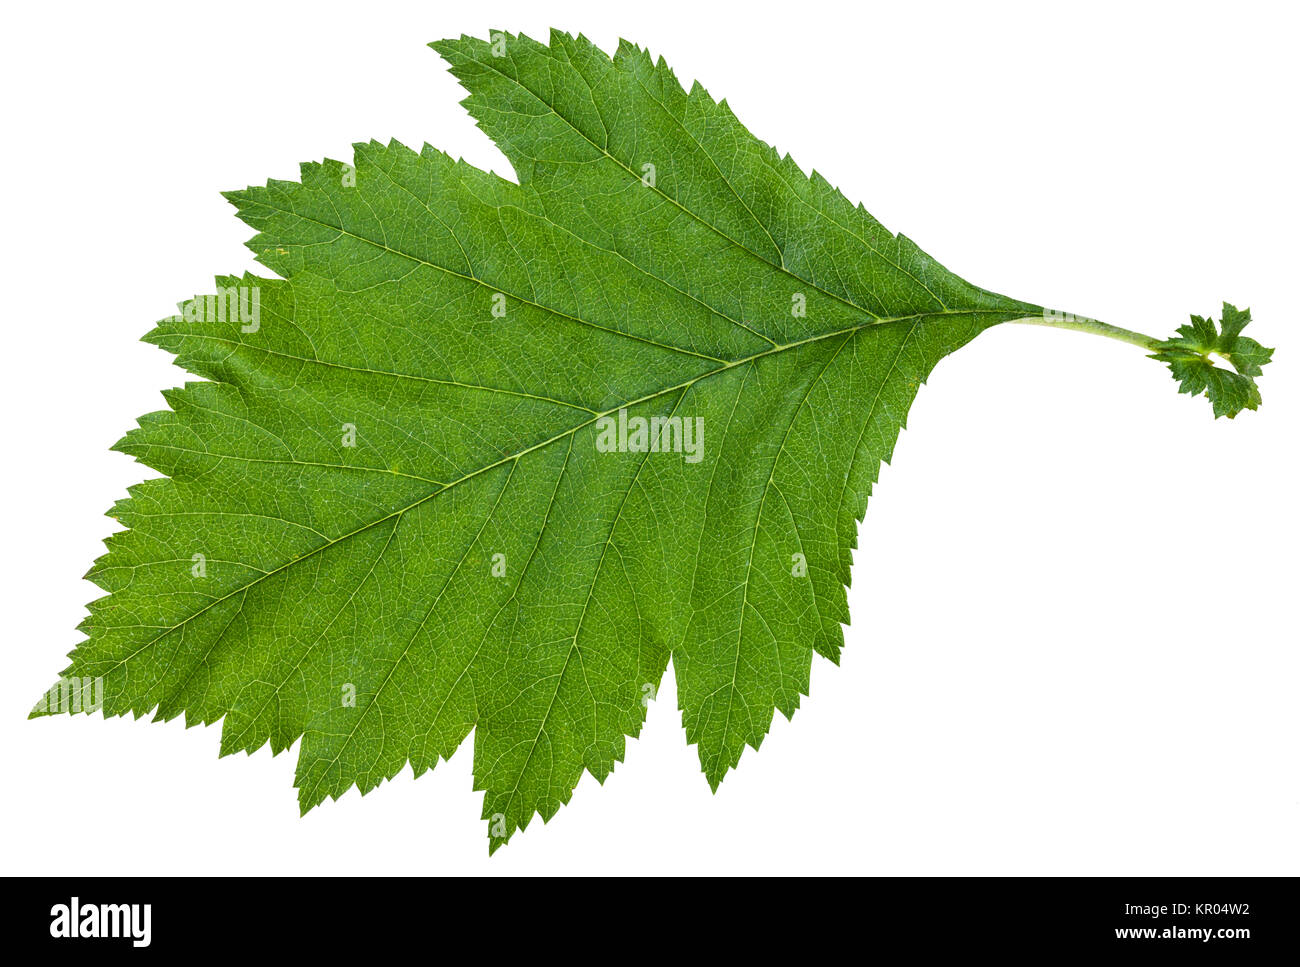 green leaf of Crataegus sanguinea shrub isolated Stock Photo